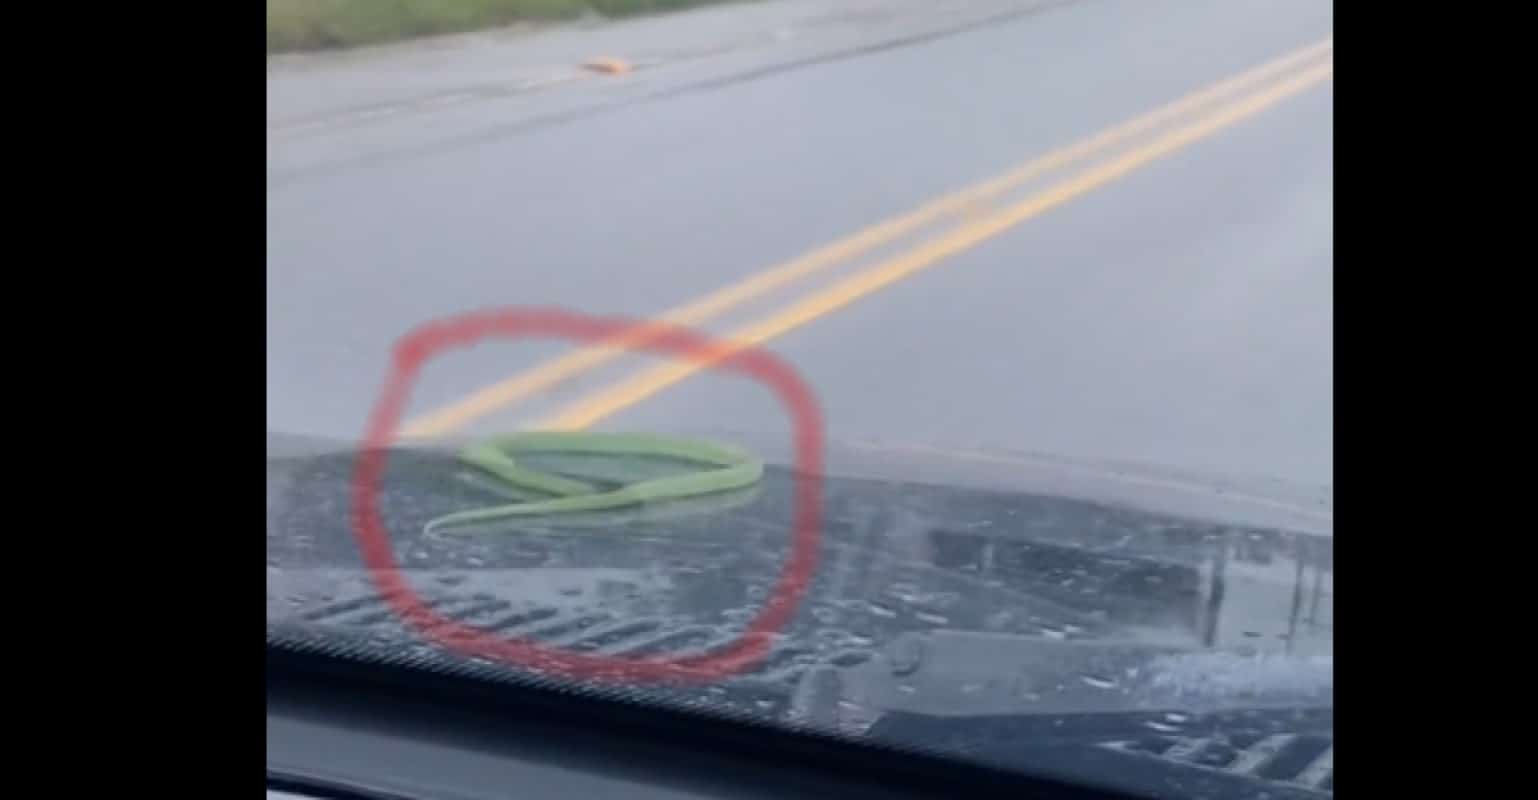 Uma cobra verde, possívelmente uma cobra-cipó, entrou nos compartimentos do motor do carro, permanecendo alguns dias, pegando carona, como você poderá conferir nos vídeos abaixo